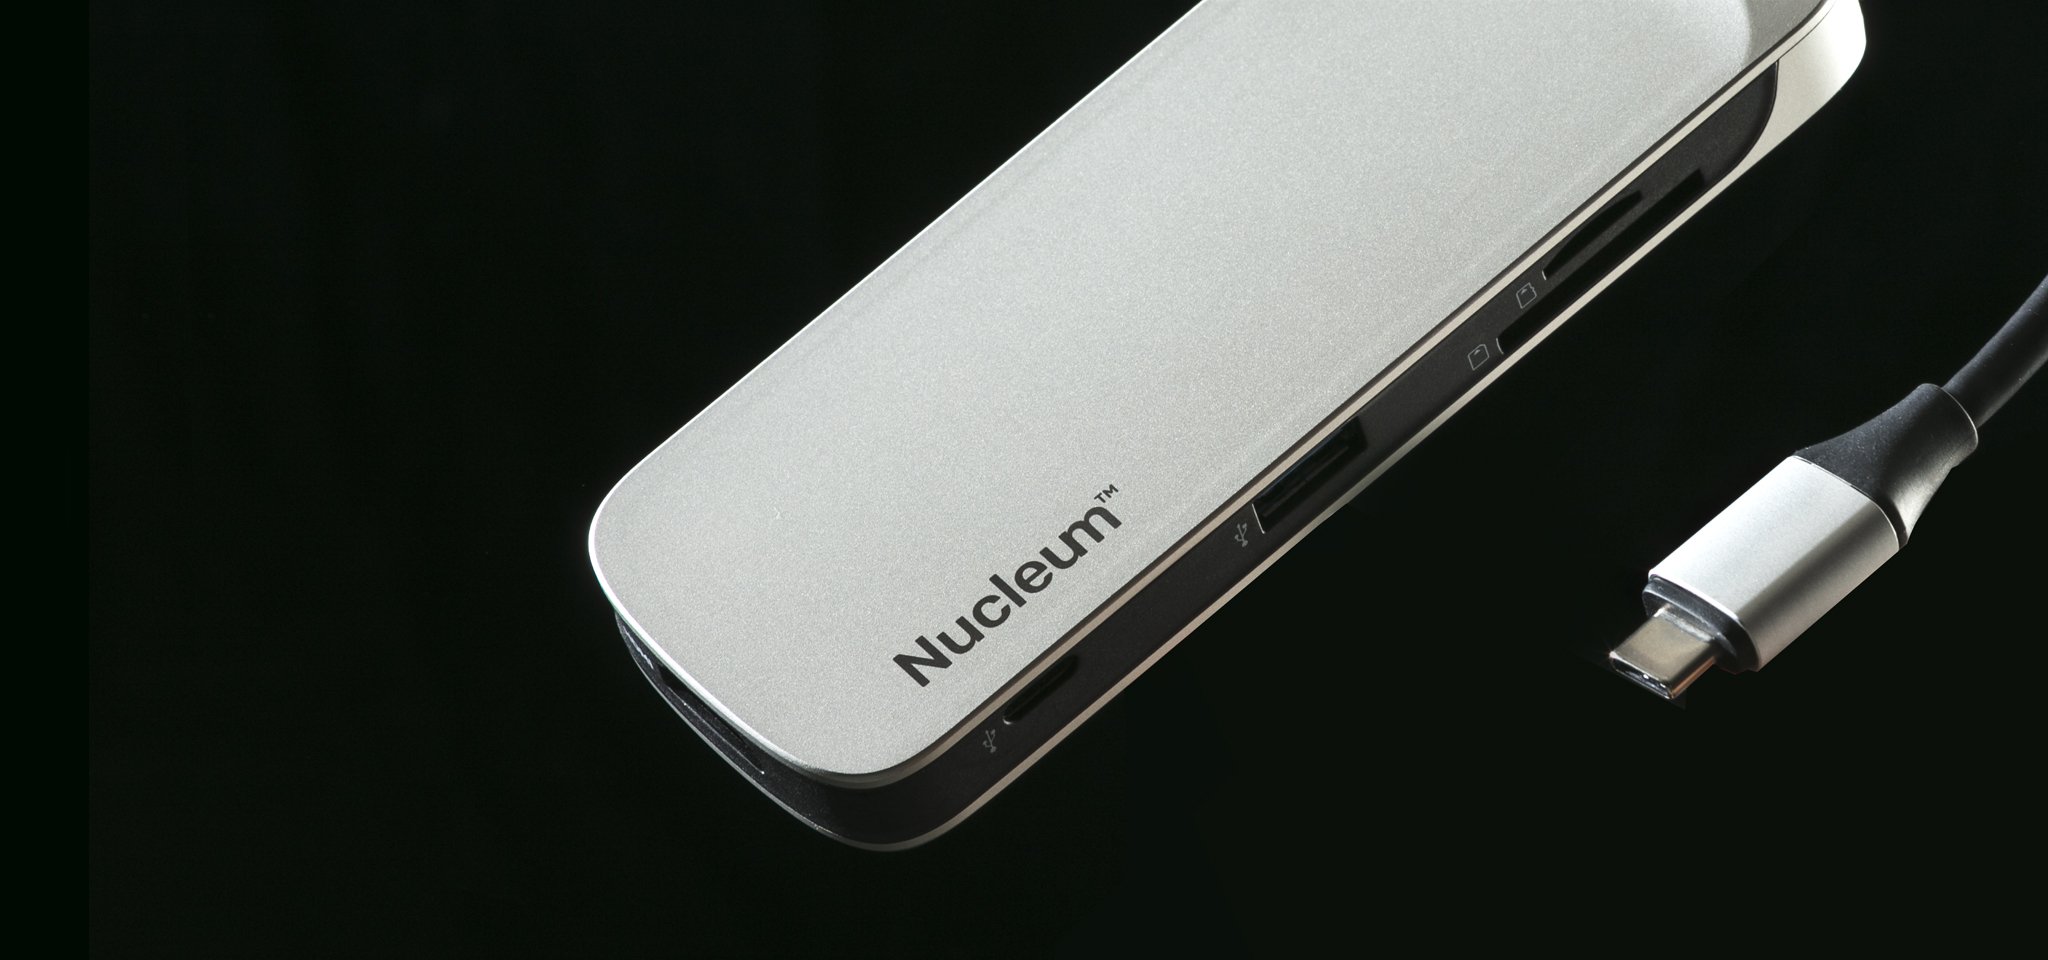 Nucleum USB-C 集線器和讀卡機以特定角度顯示，背景為純黑色